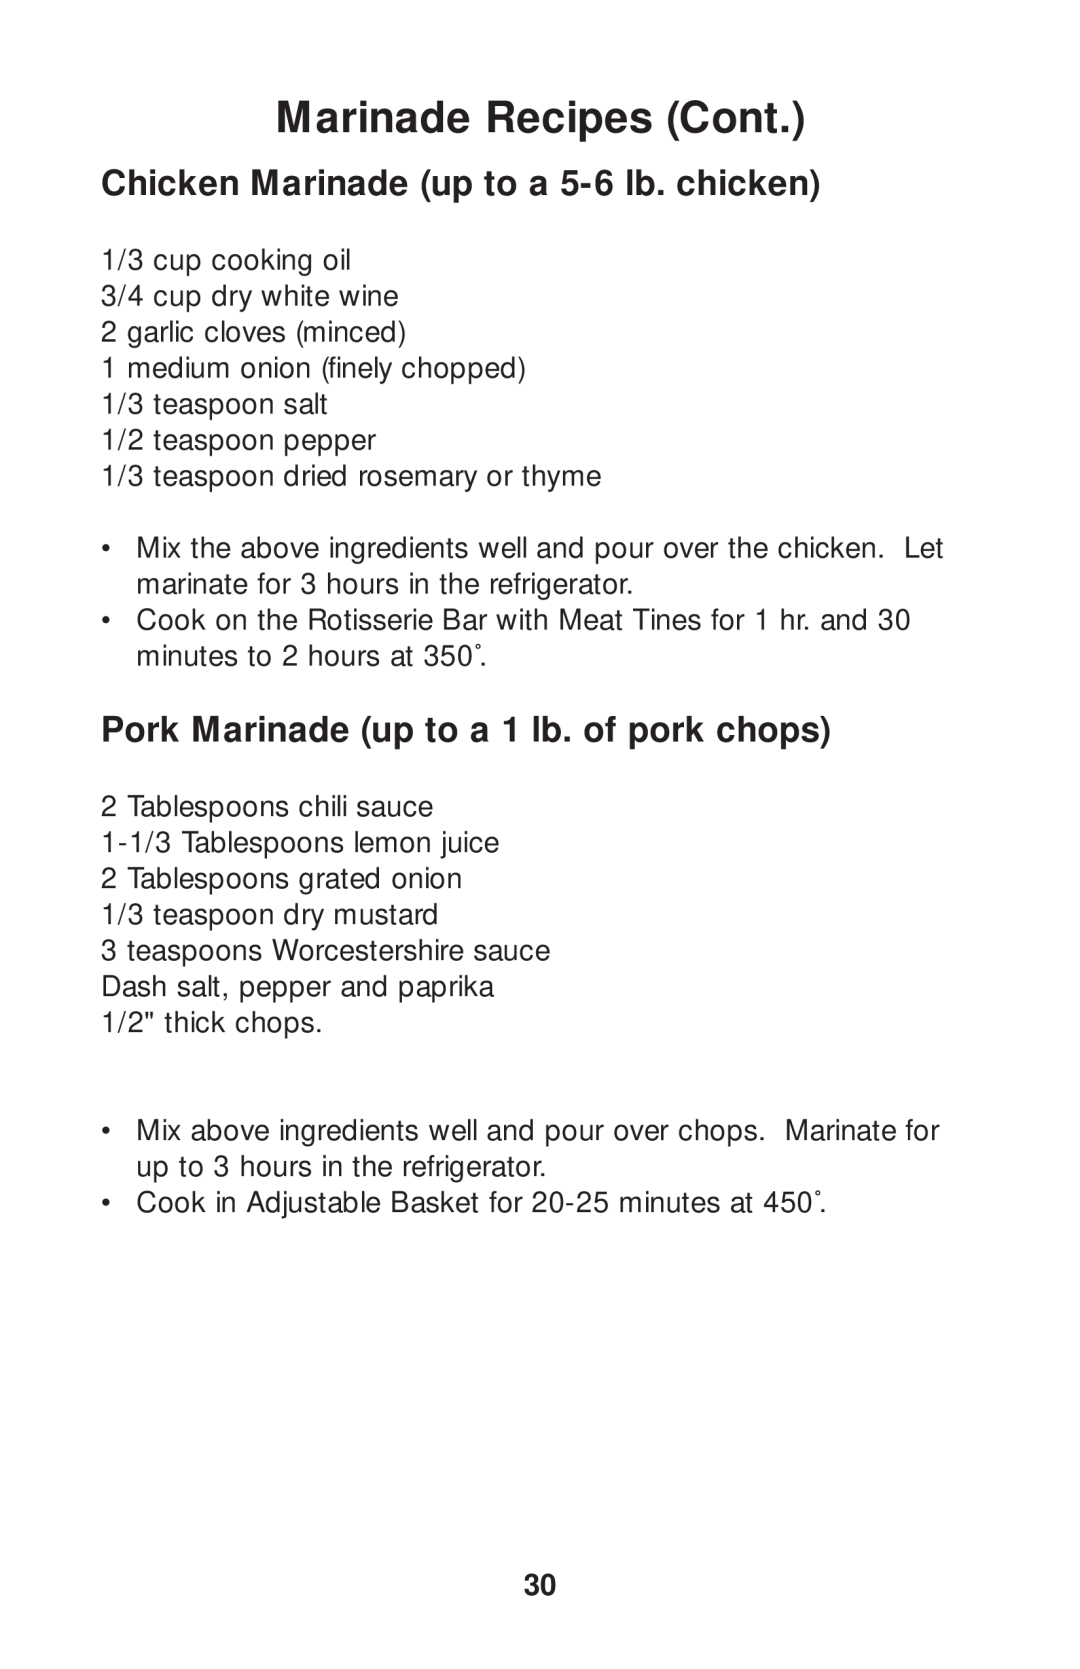 Salton GR80B Marinade Recipes Cont, Chicken Marinade up to a 5-6lb. chicken, Pork Marinade up to a 1 lb. of pork chops 